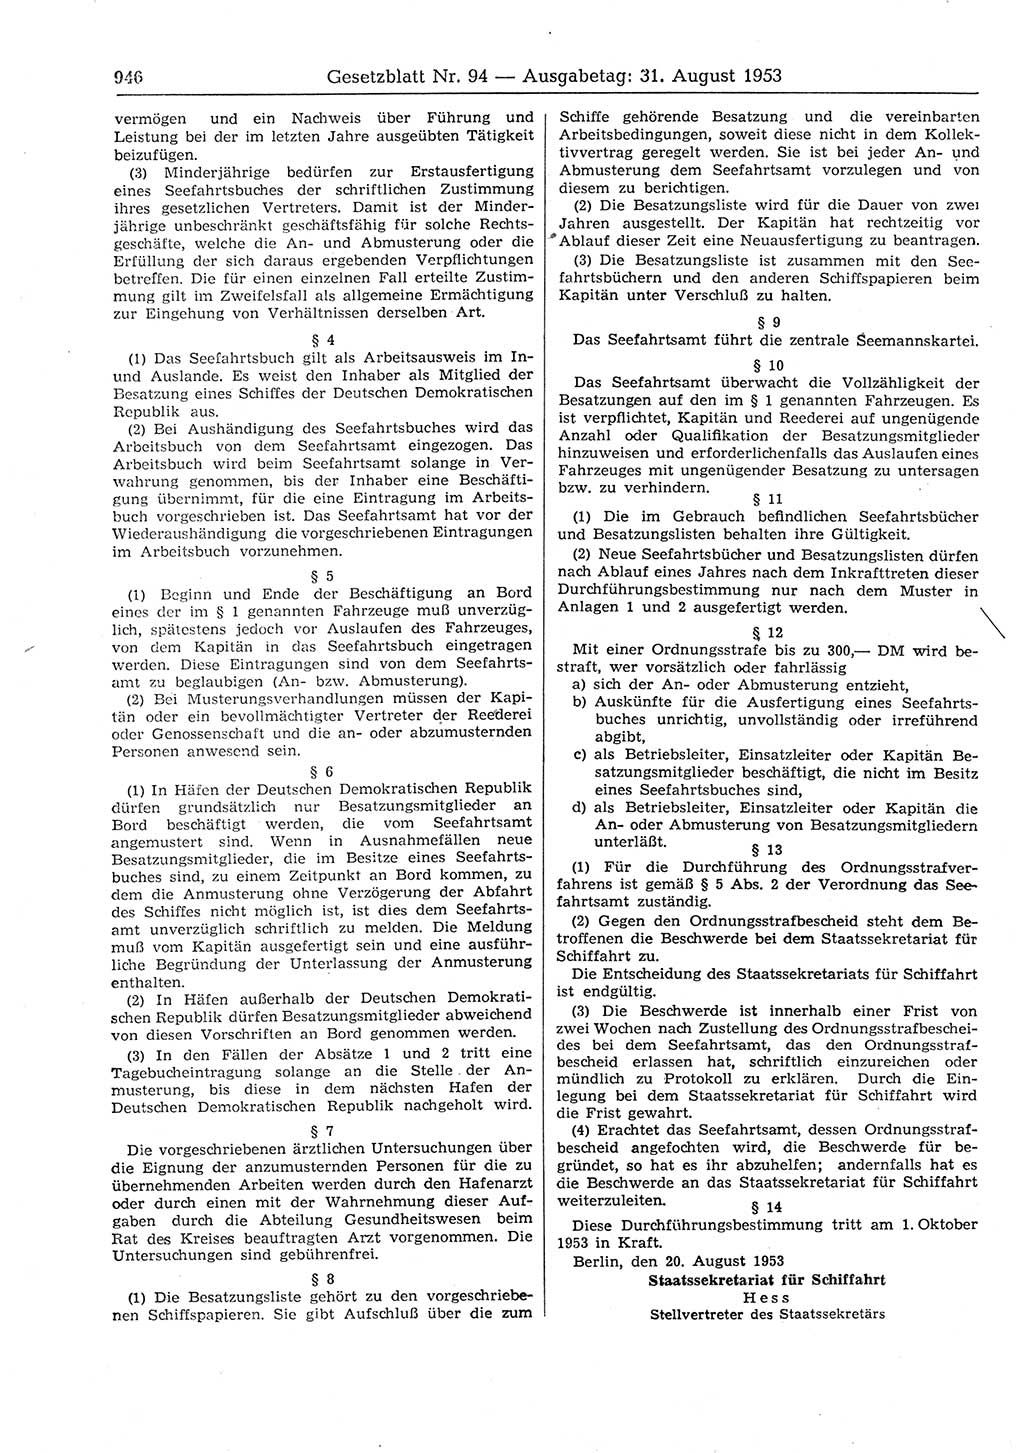 Gesetzblatt (GBl.) der Deutschen Demokratischen Republik (DDR) 1953, Seite 946 (GBl. DDR 1953, S. 946)